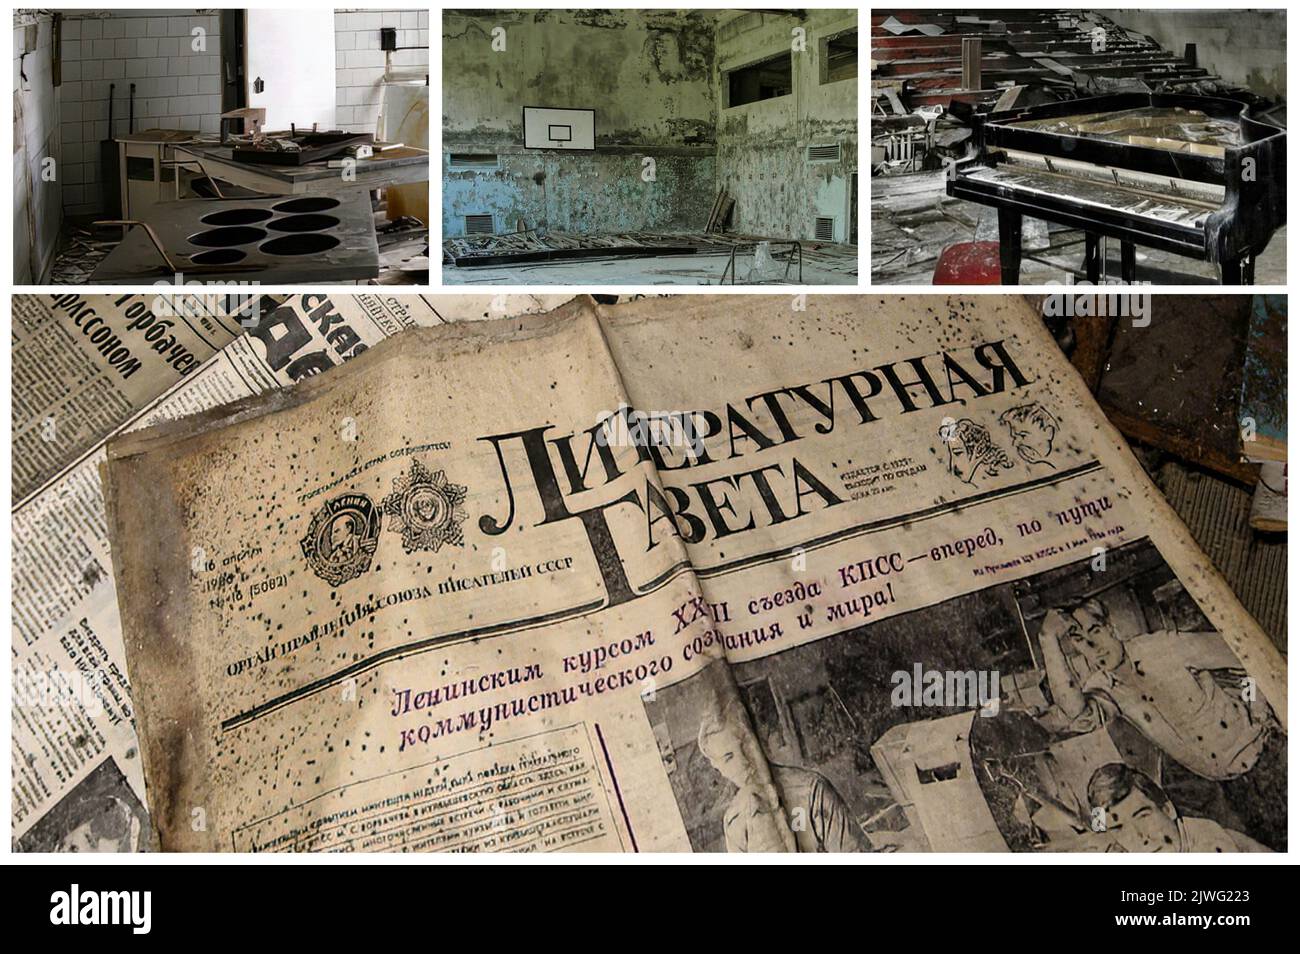 Interno di alcune case abbandonate dopo il disastro di Cernobyl nella città abbandonata di Pripyat (Ucraina) nella zona di esclusione, la città fantasma (1) Foto Stock